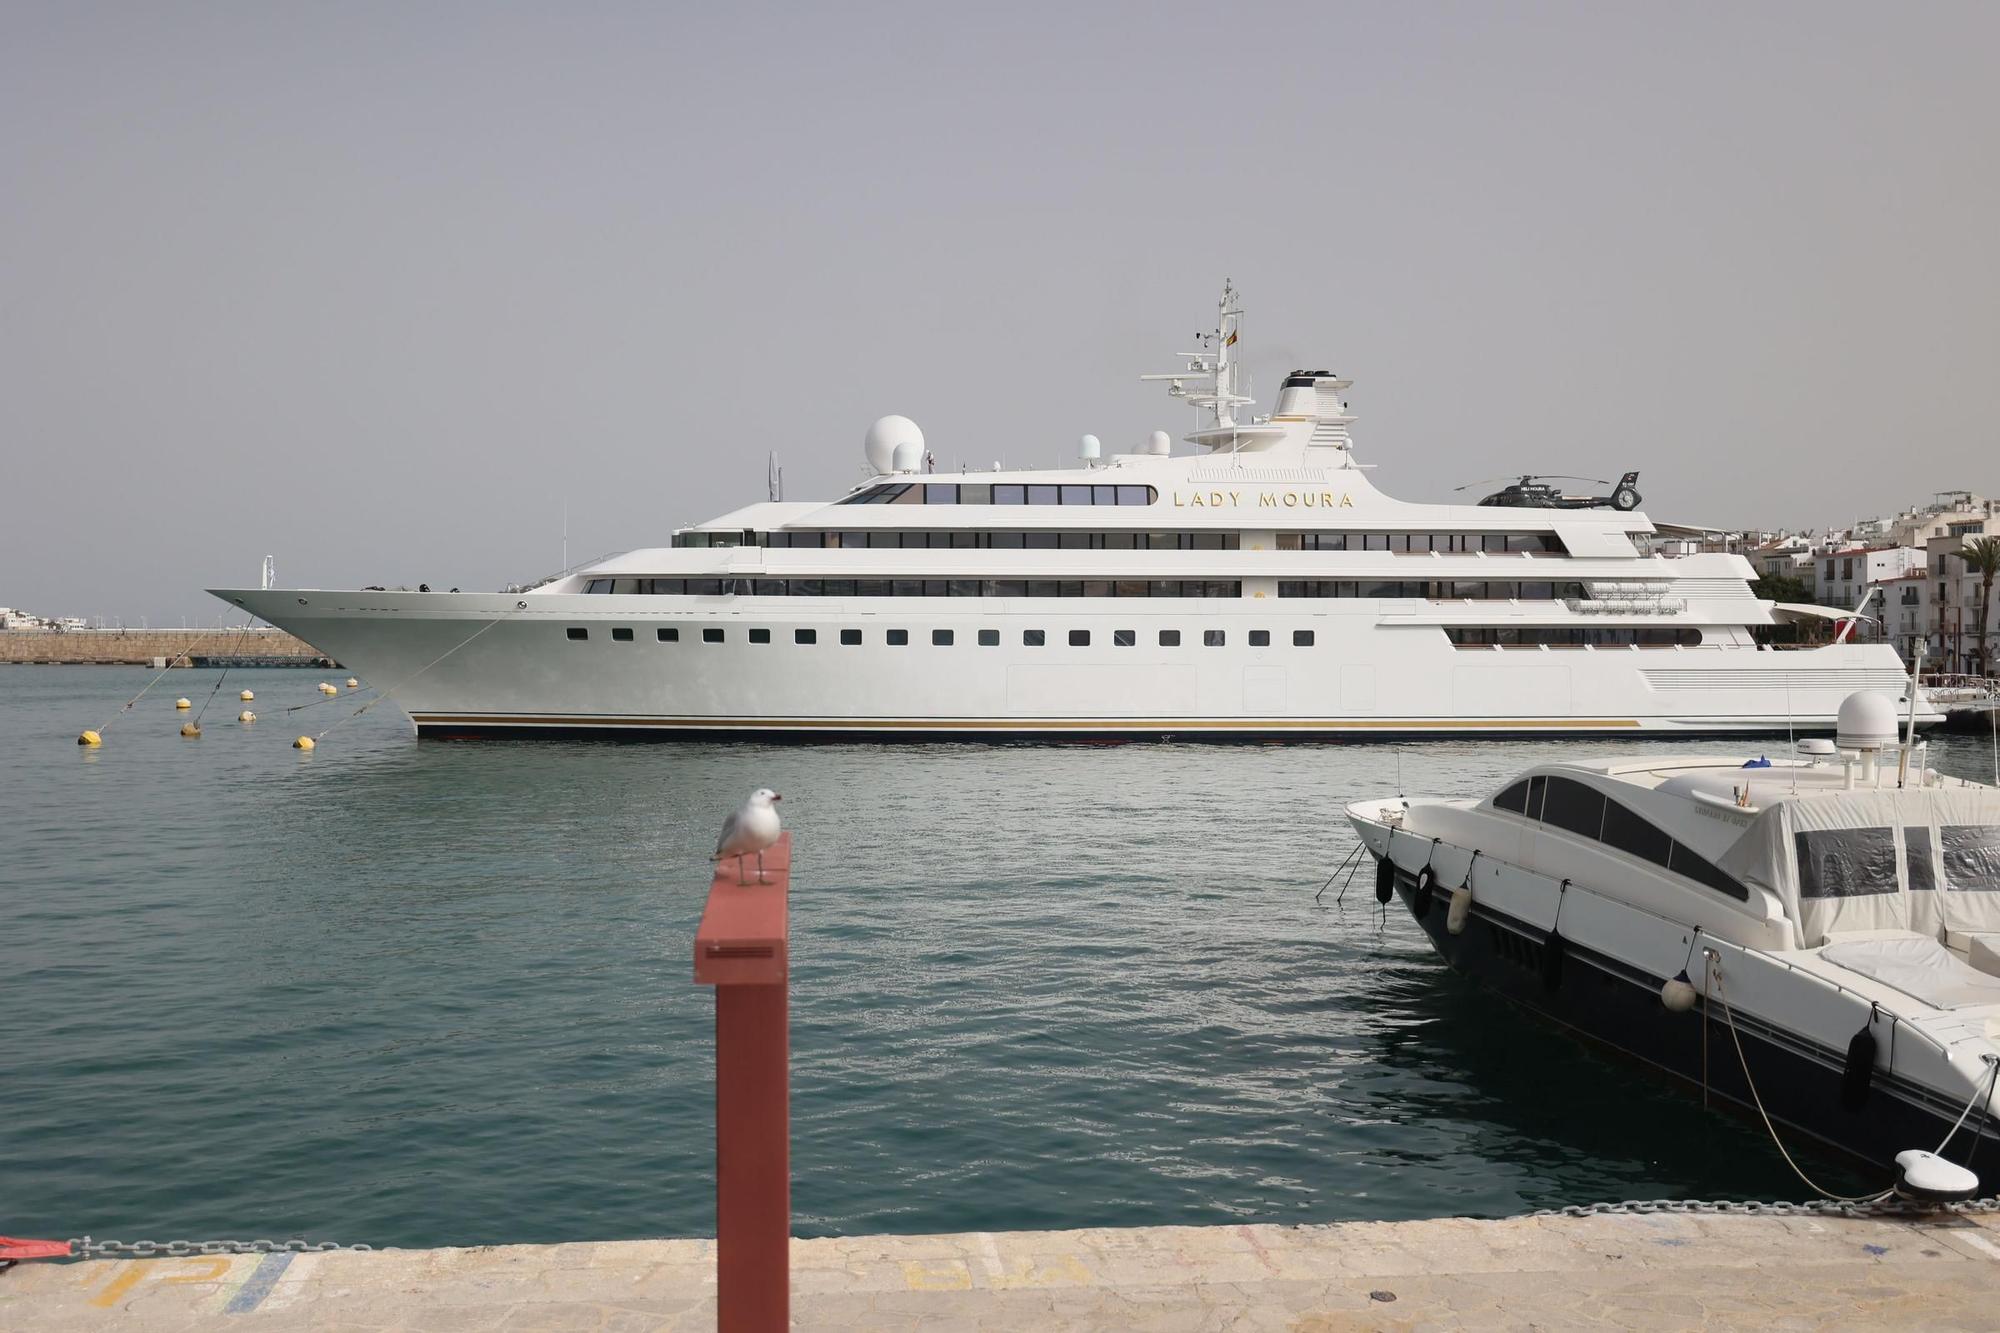 El megayate 'Lady Moura' estrena la temporada en la nueva marina del puerto de Ibiza